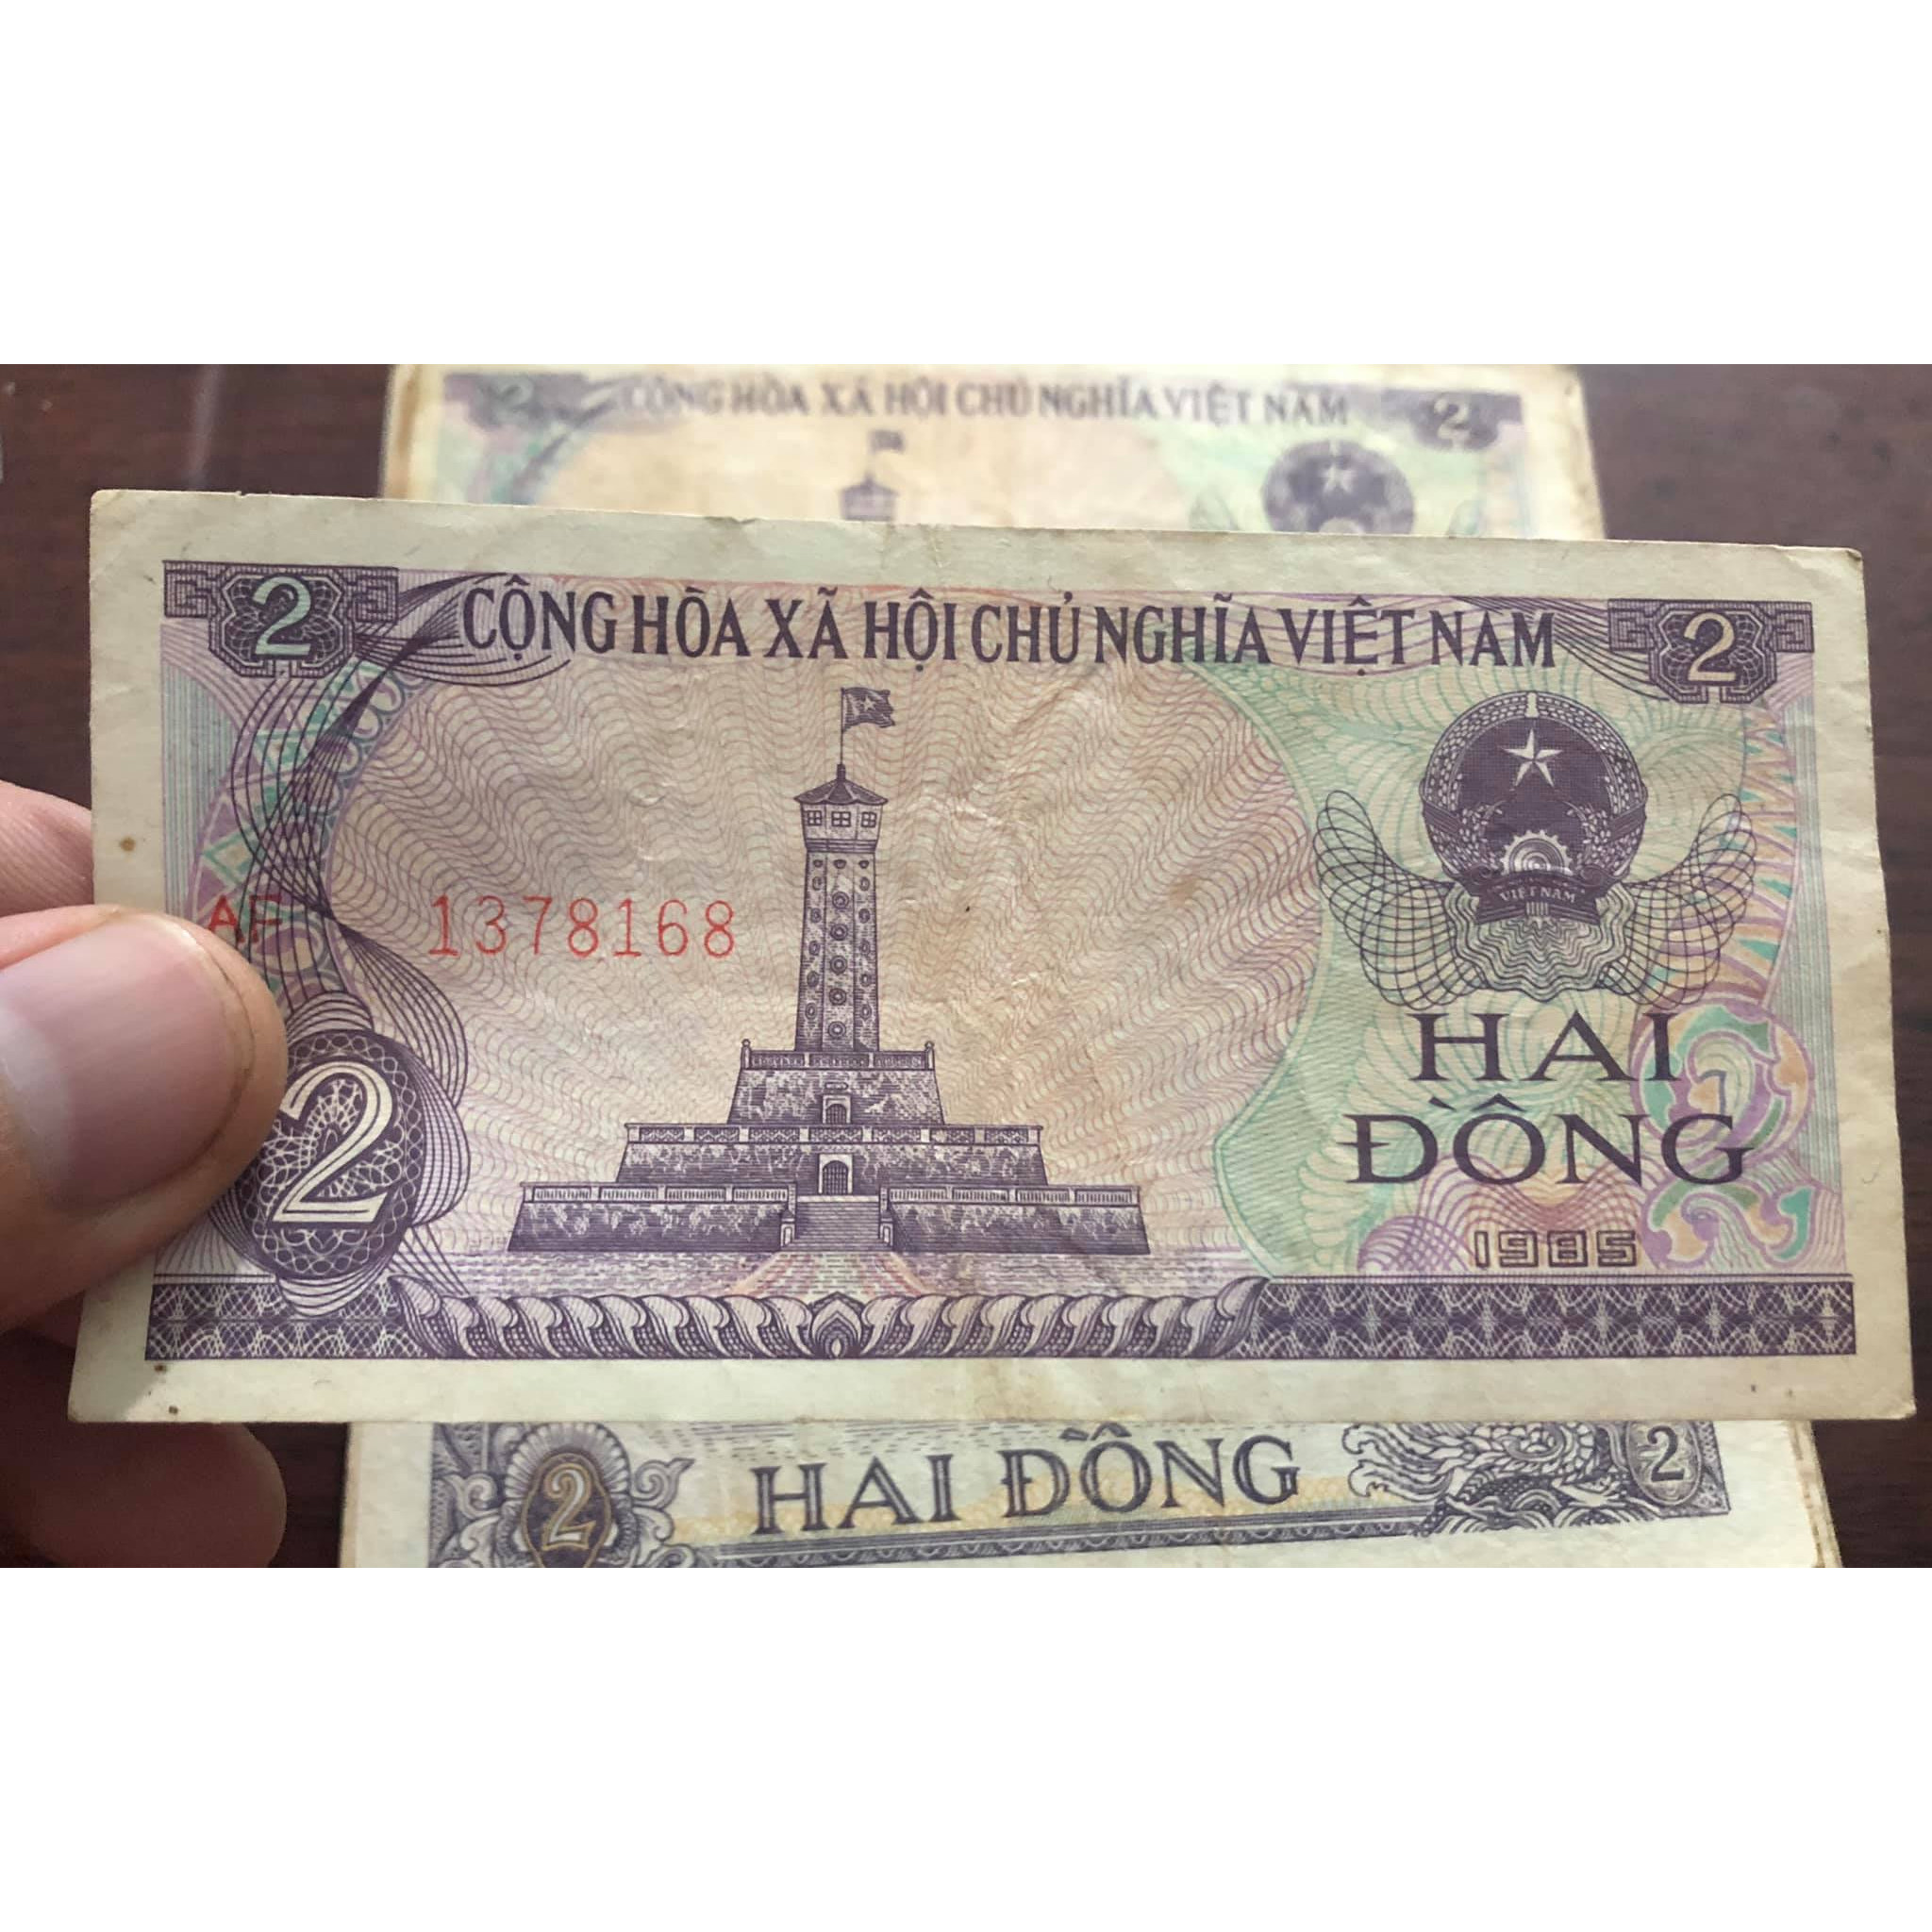 01 tờ tiền mệnh giá 2 đồng Việt Nam xưa, tặng kèm bao nilong bảo quản